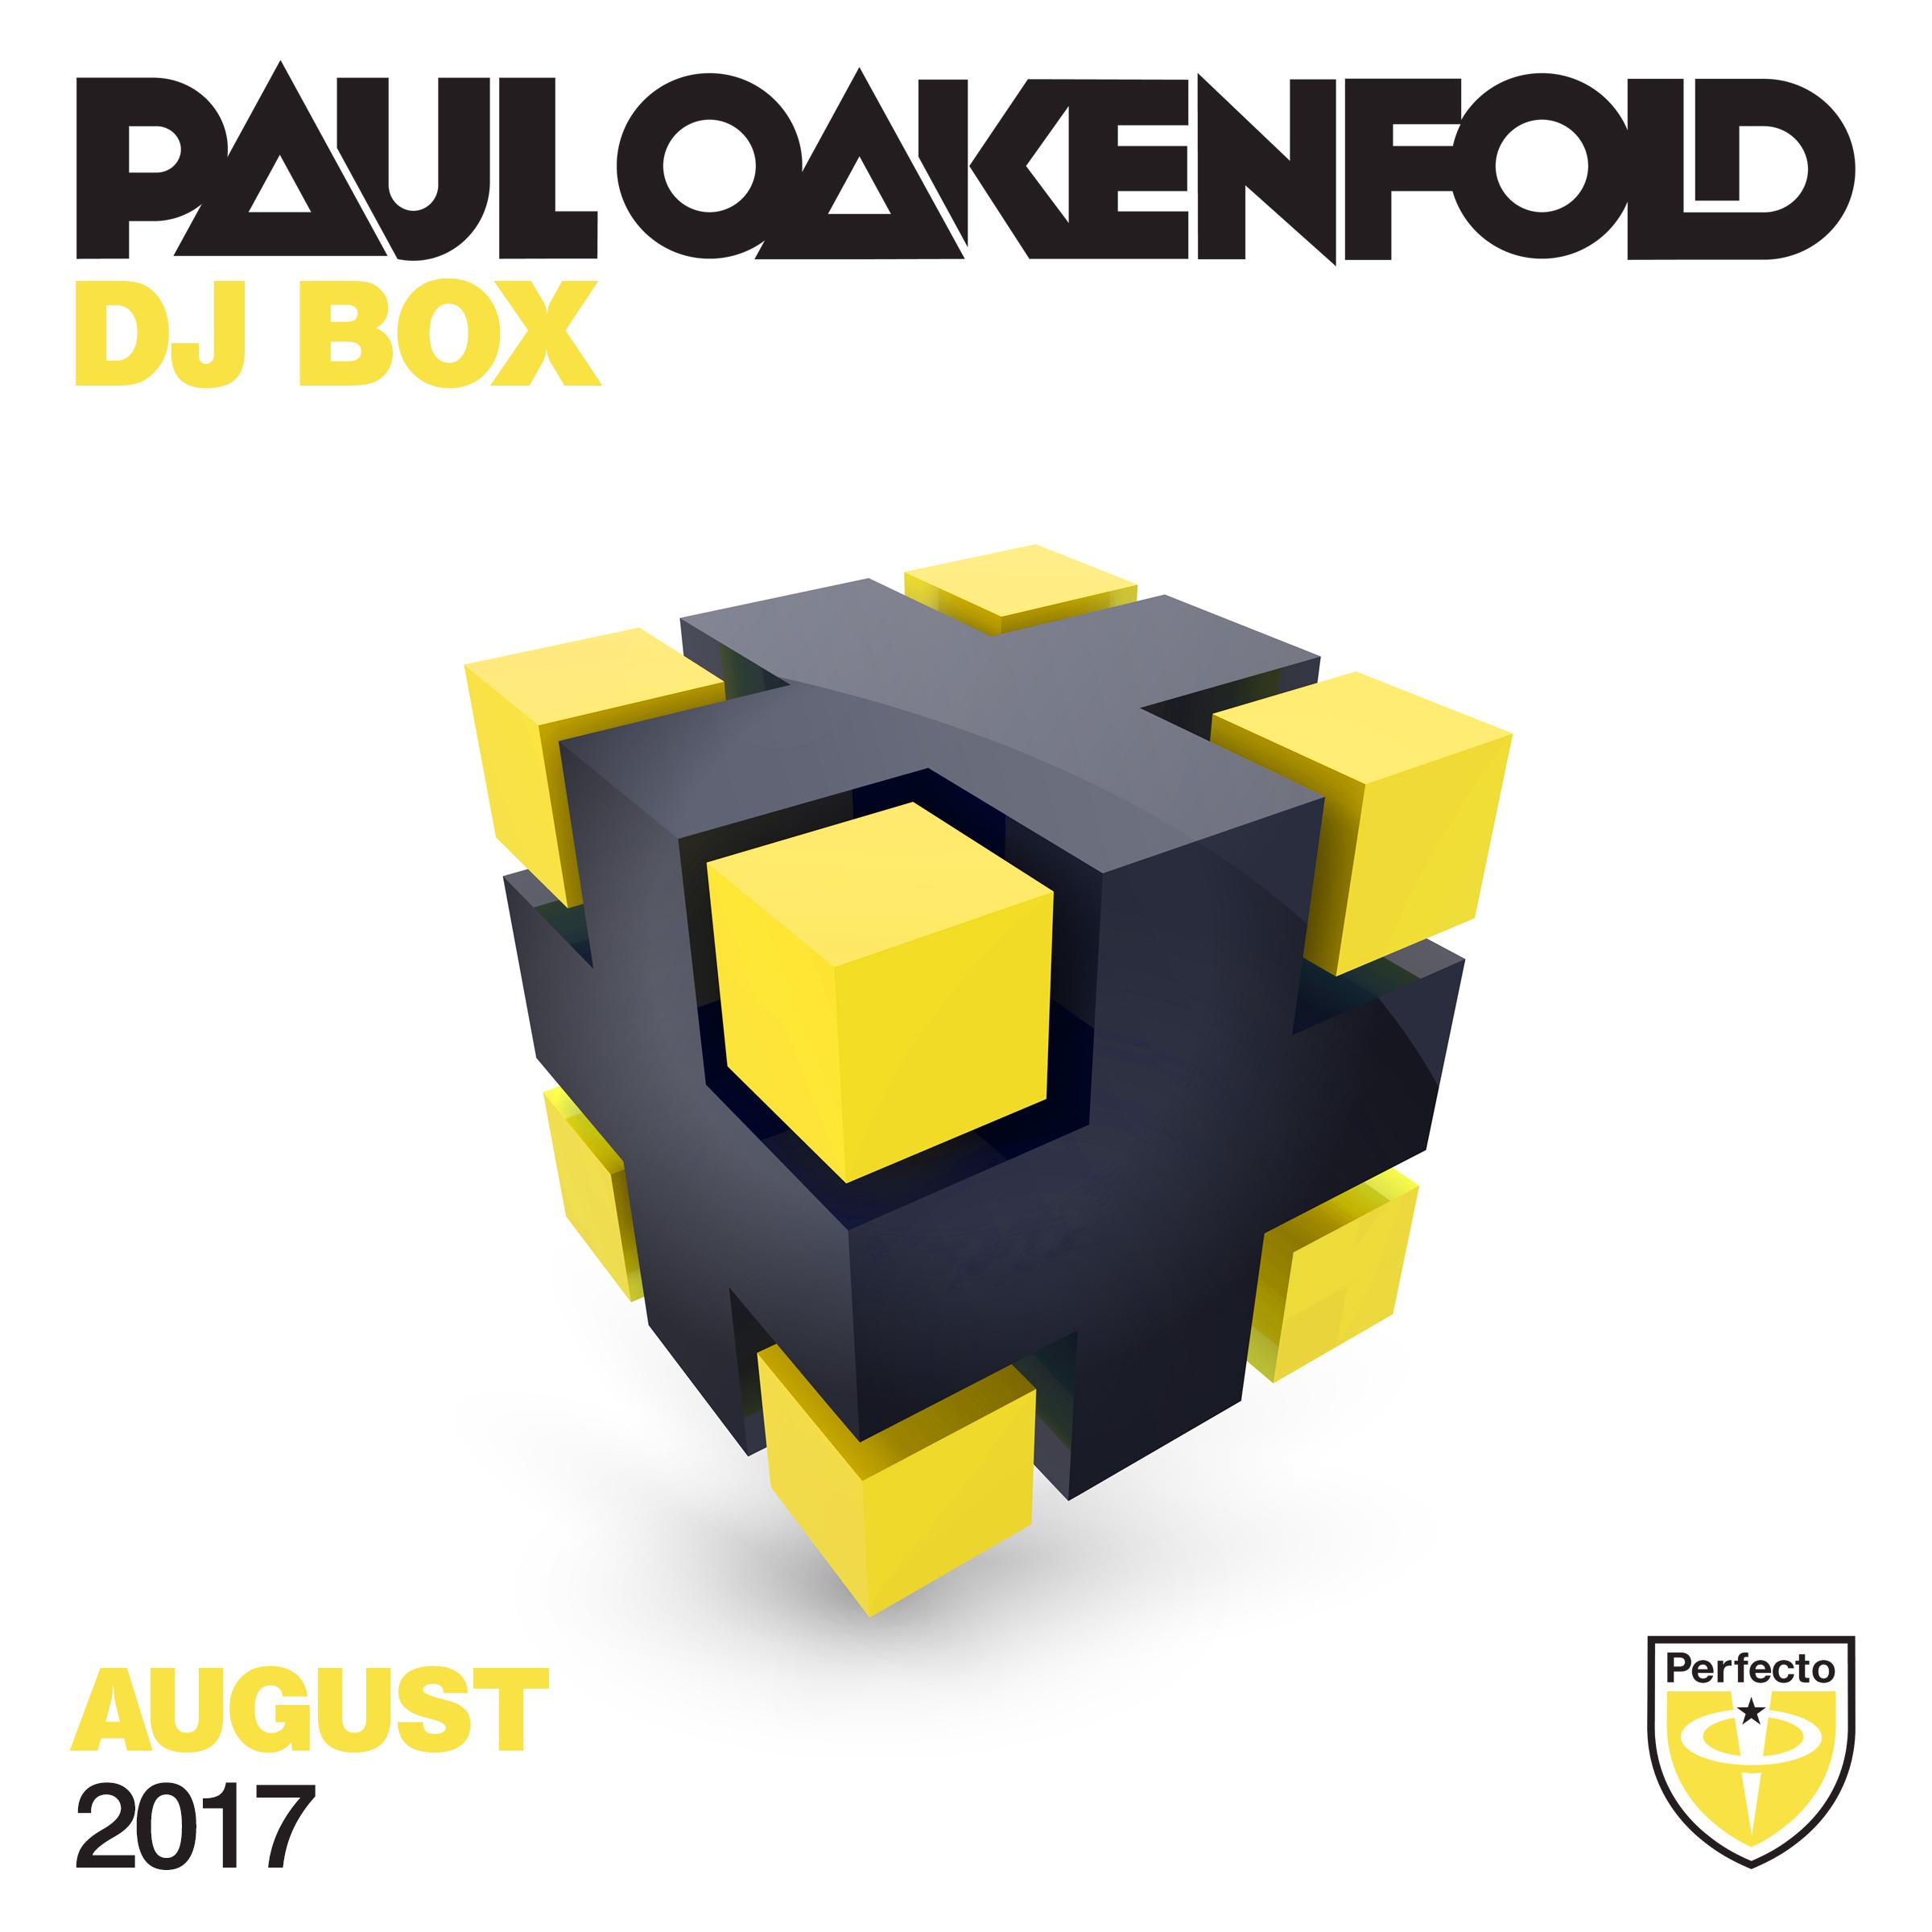 Paul Oakenfold - DJ Box Augustus 2017